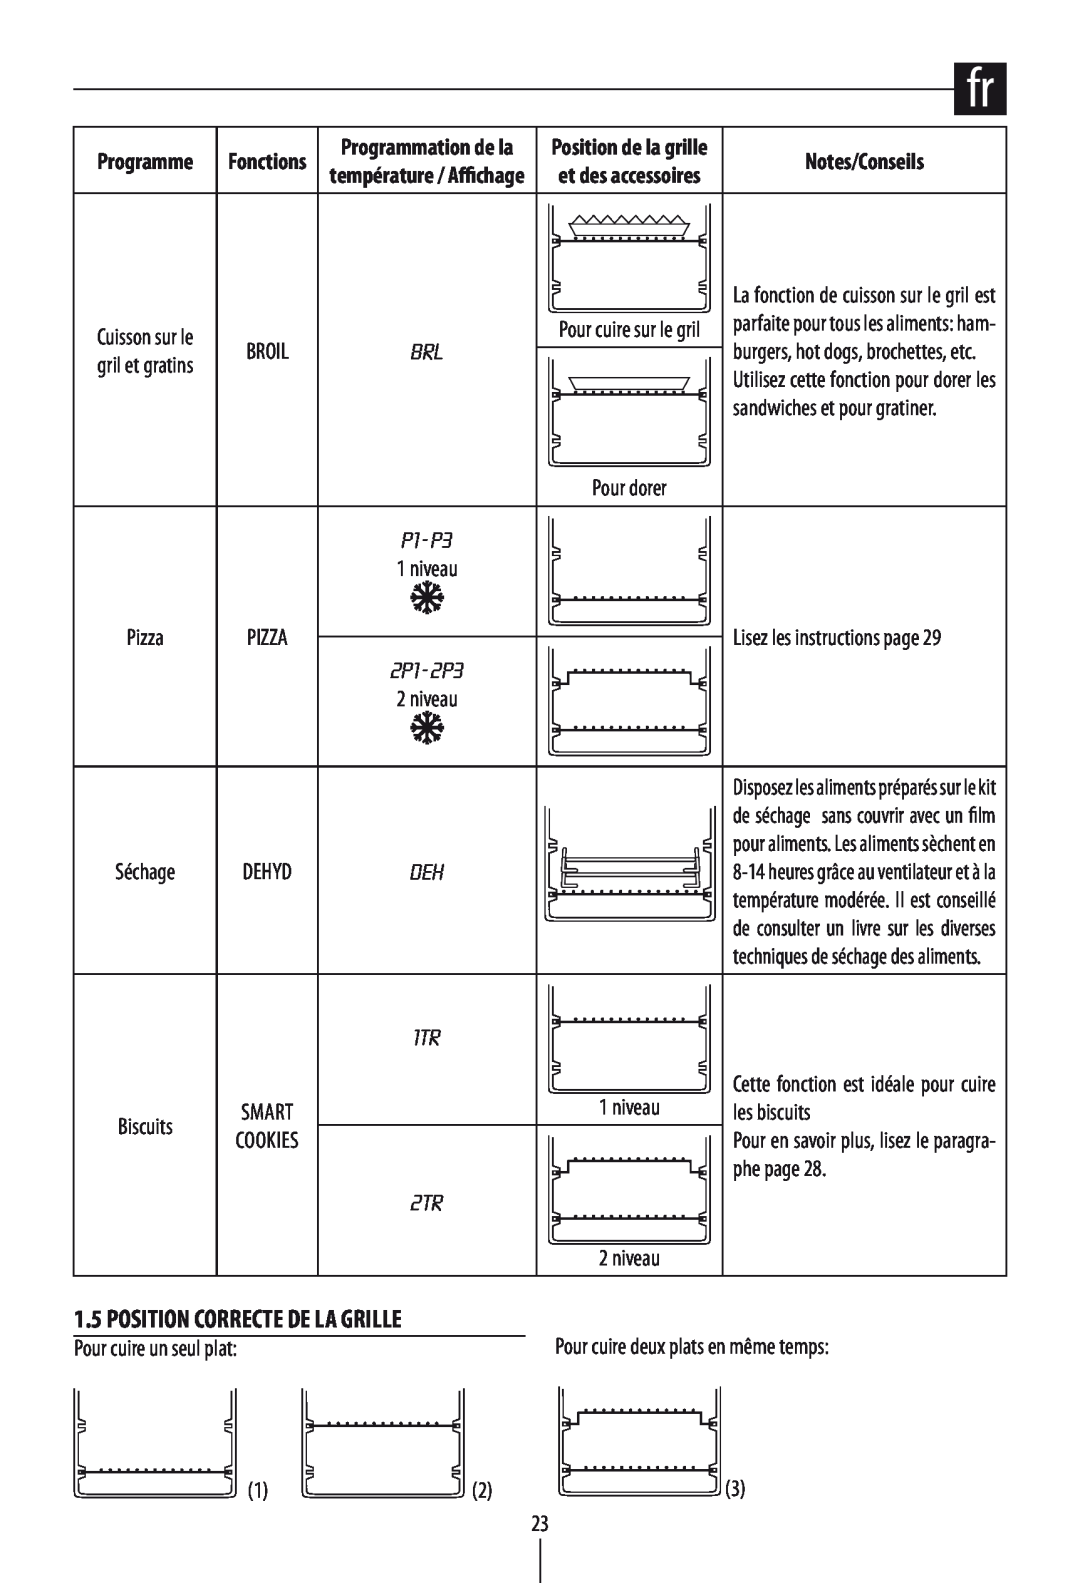 DeLonghi DO1289 manual Notes/Conseils, Position Correcte De La Grille 